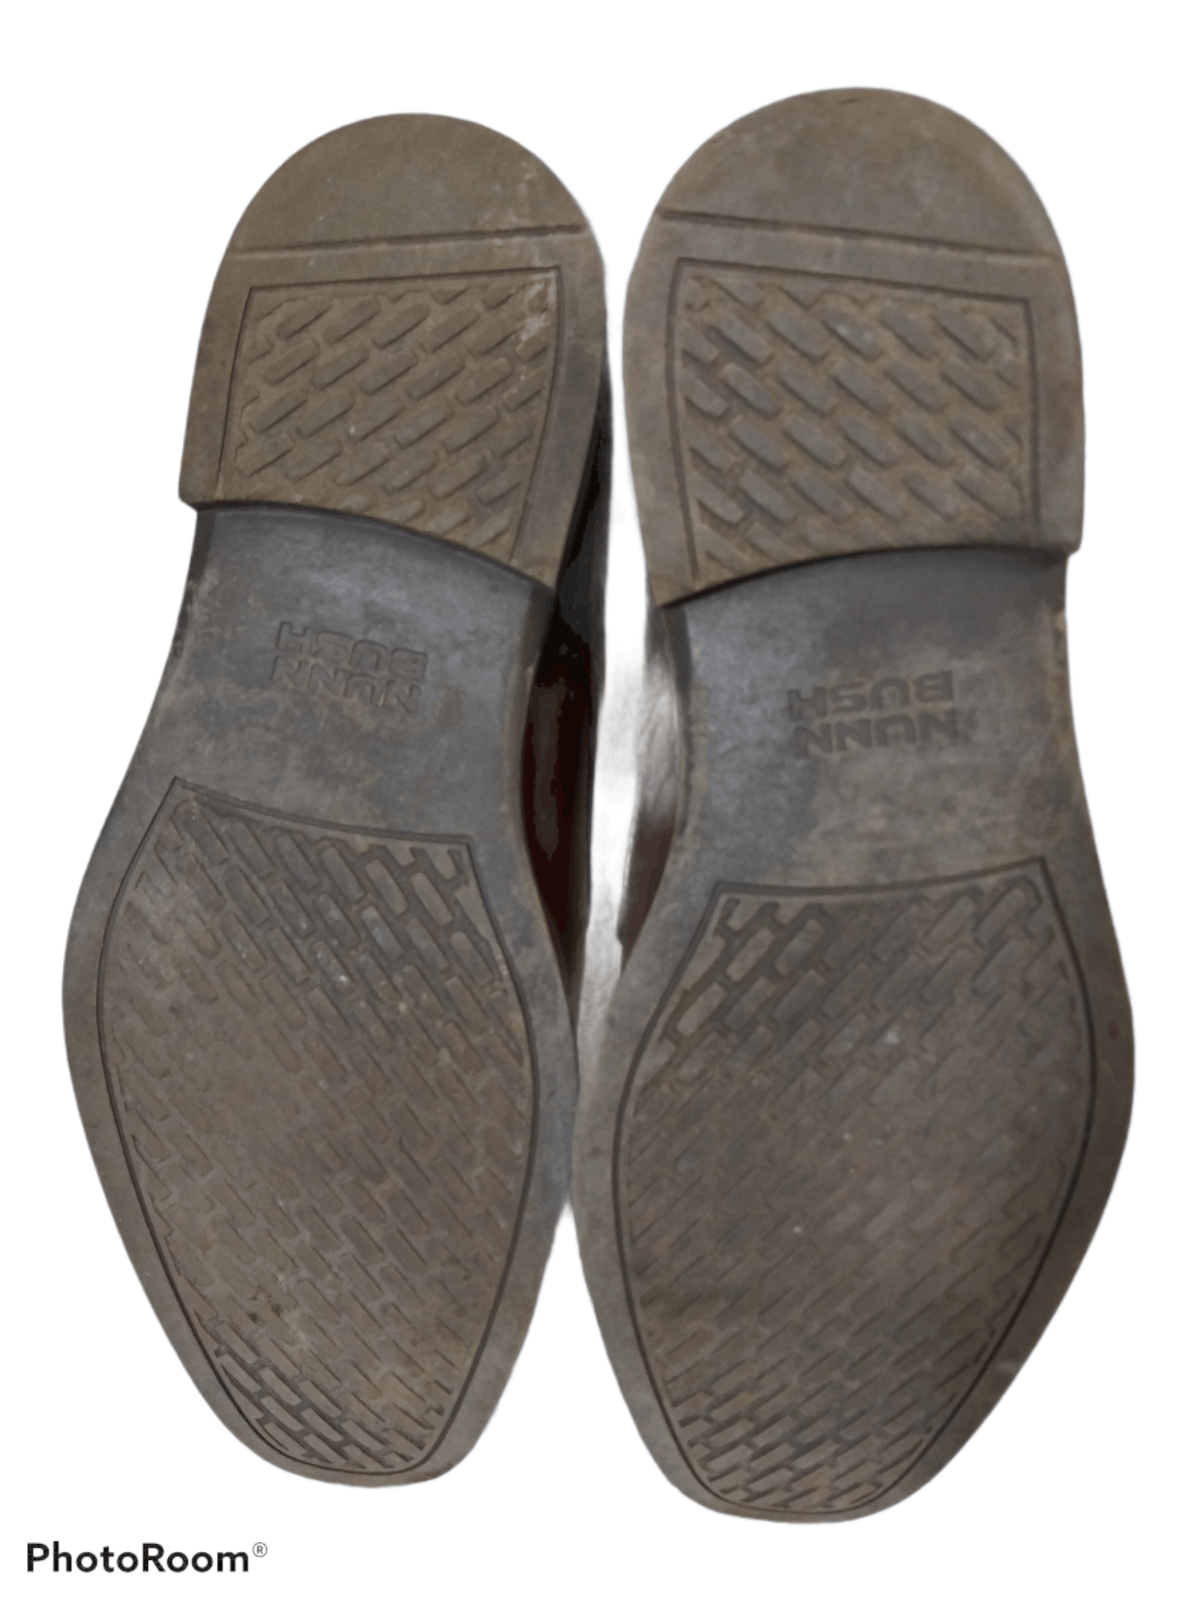 Nunn Bush Nunn Bush Men's Oxford Leather Dress Shoes Brown Size US 9 / EU 42 - 4 Preview